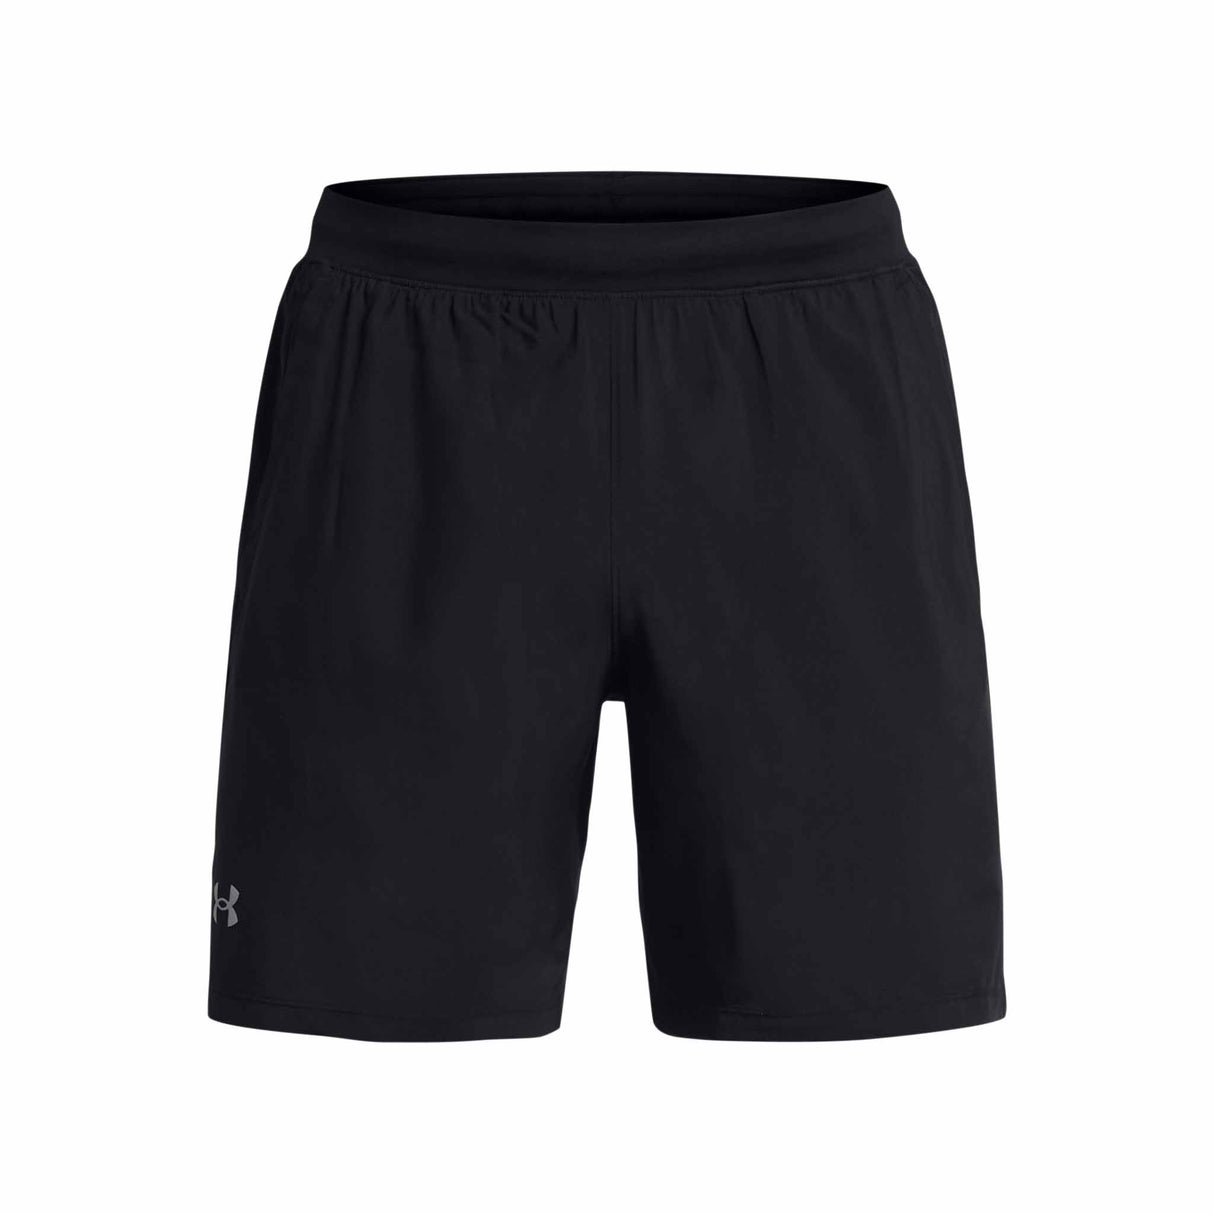 Under Armour Launch shorts homme 7 pouces - black / reflective